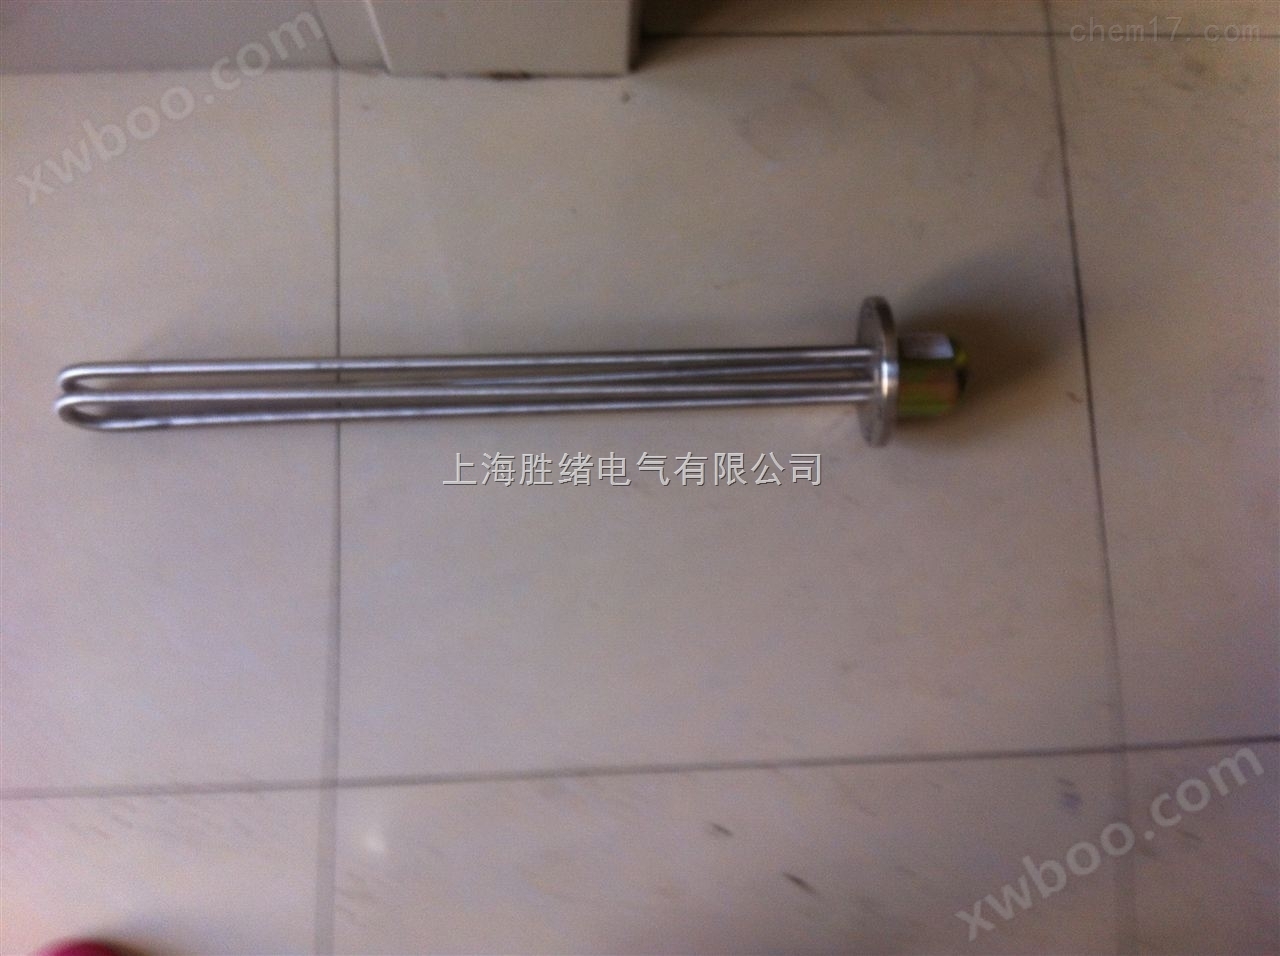 上海SRY2/SRY4管状电加热器生产厂家